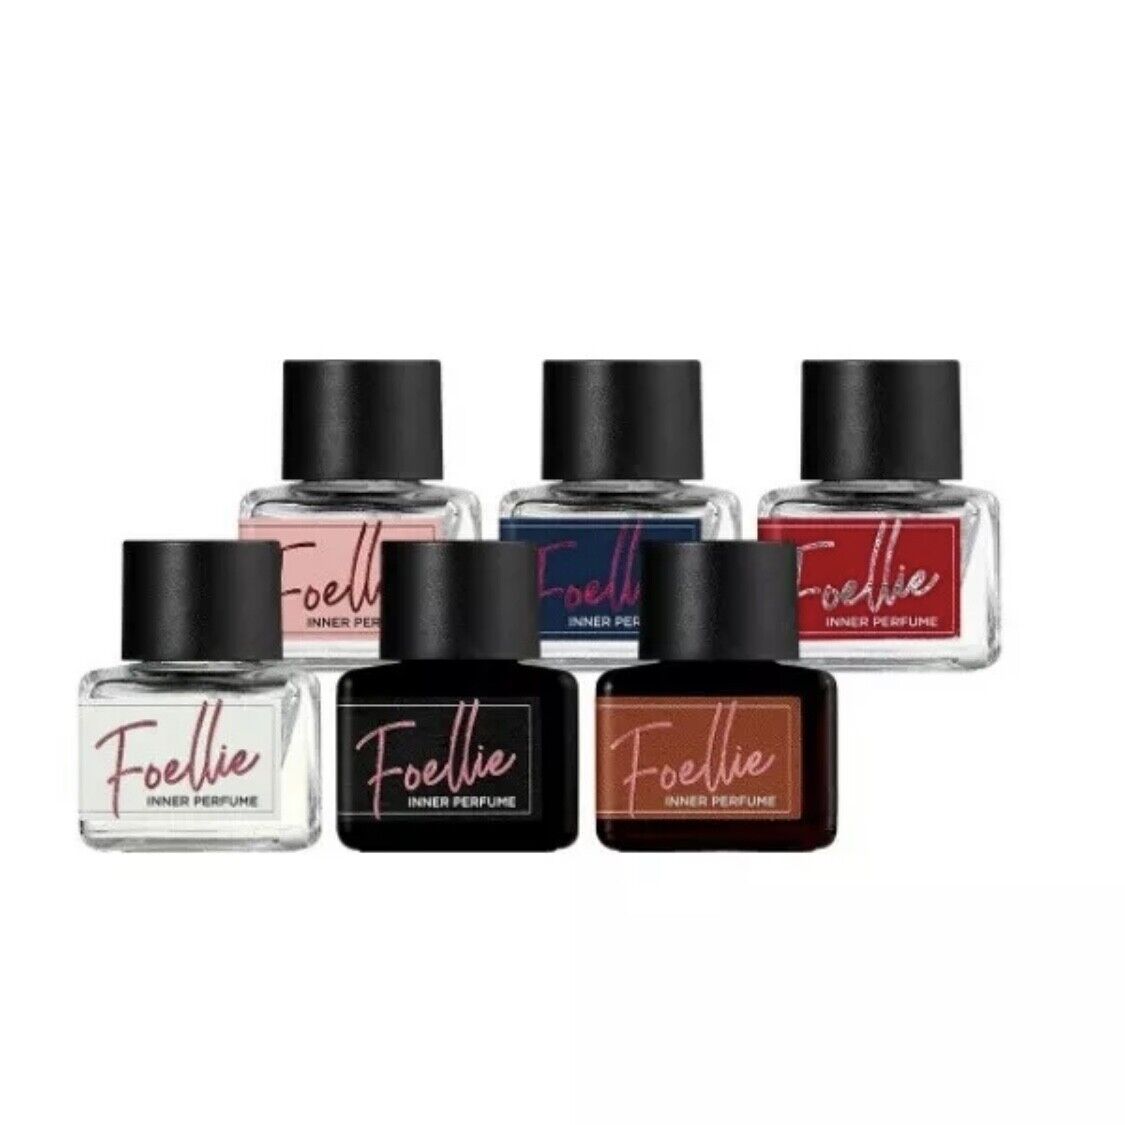 FOELLIE Feminine Care 『5年保証』 Hygiene Cleanser 最安値挑戦 Perfume Inner Fragrance